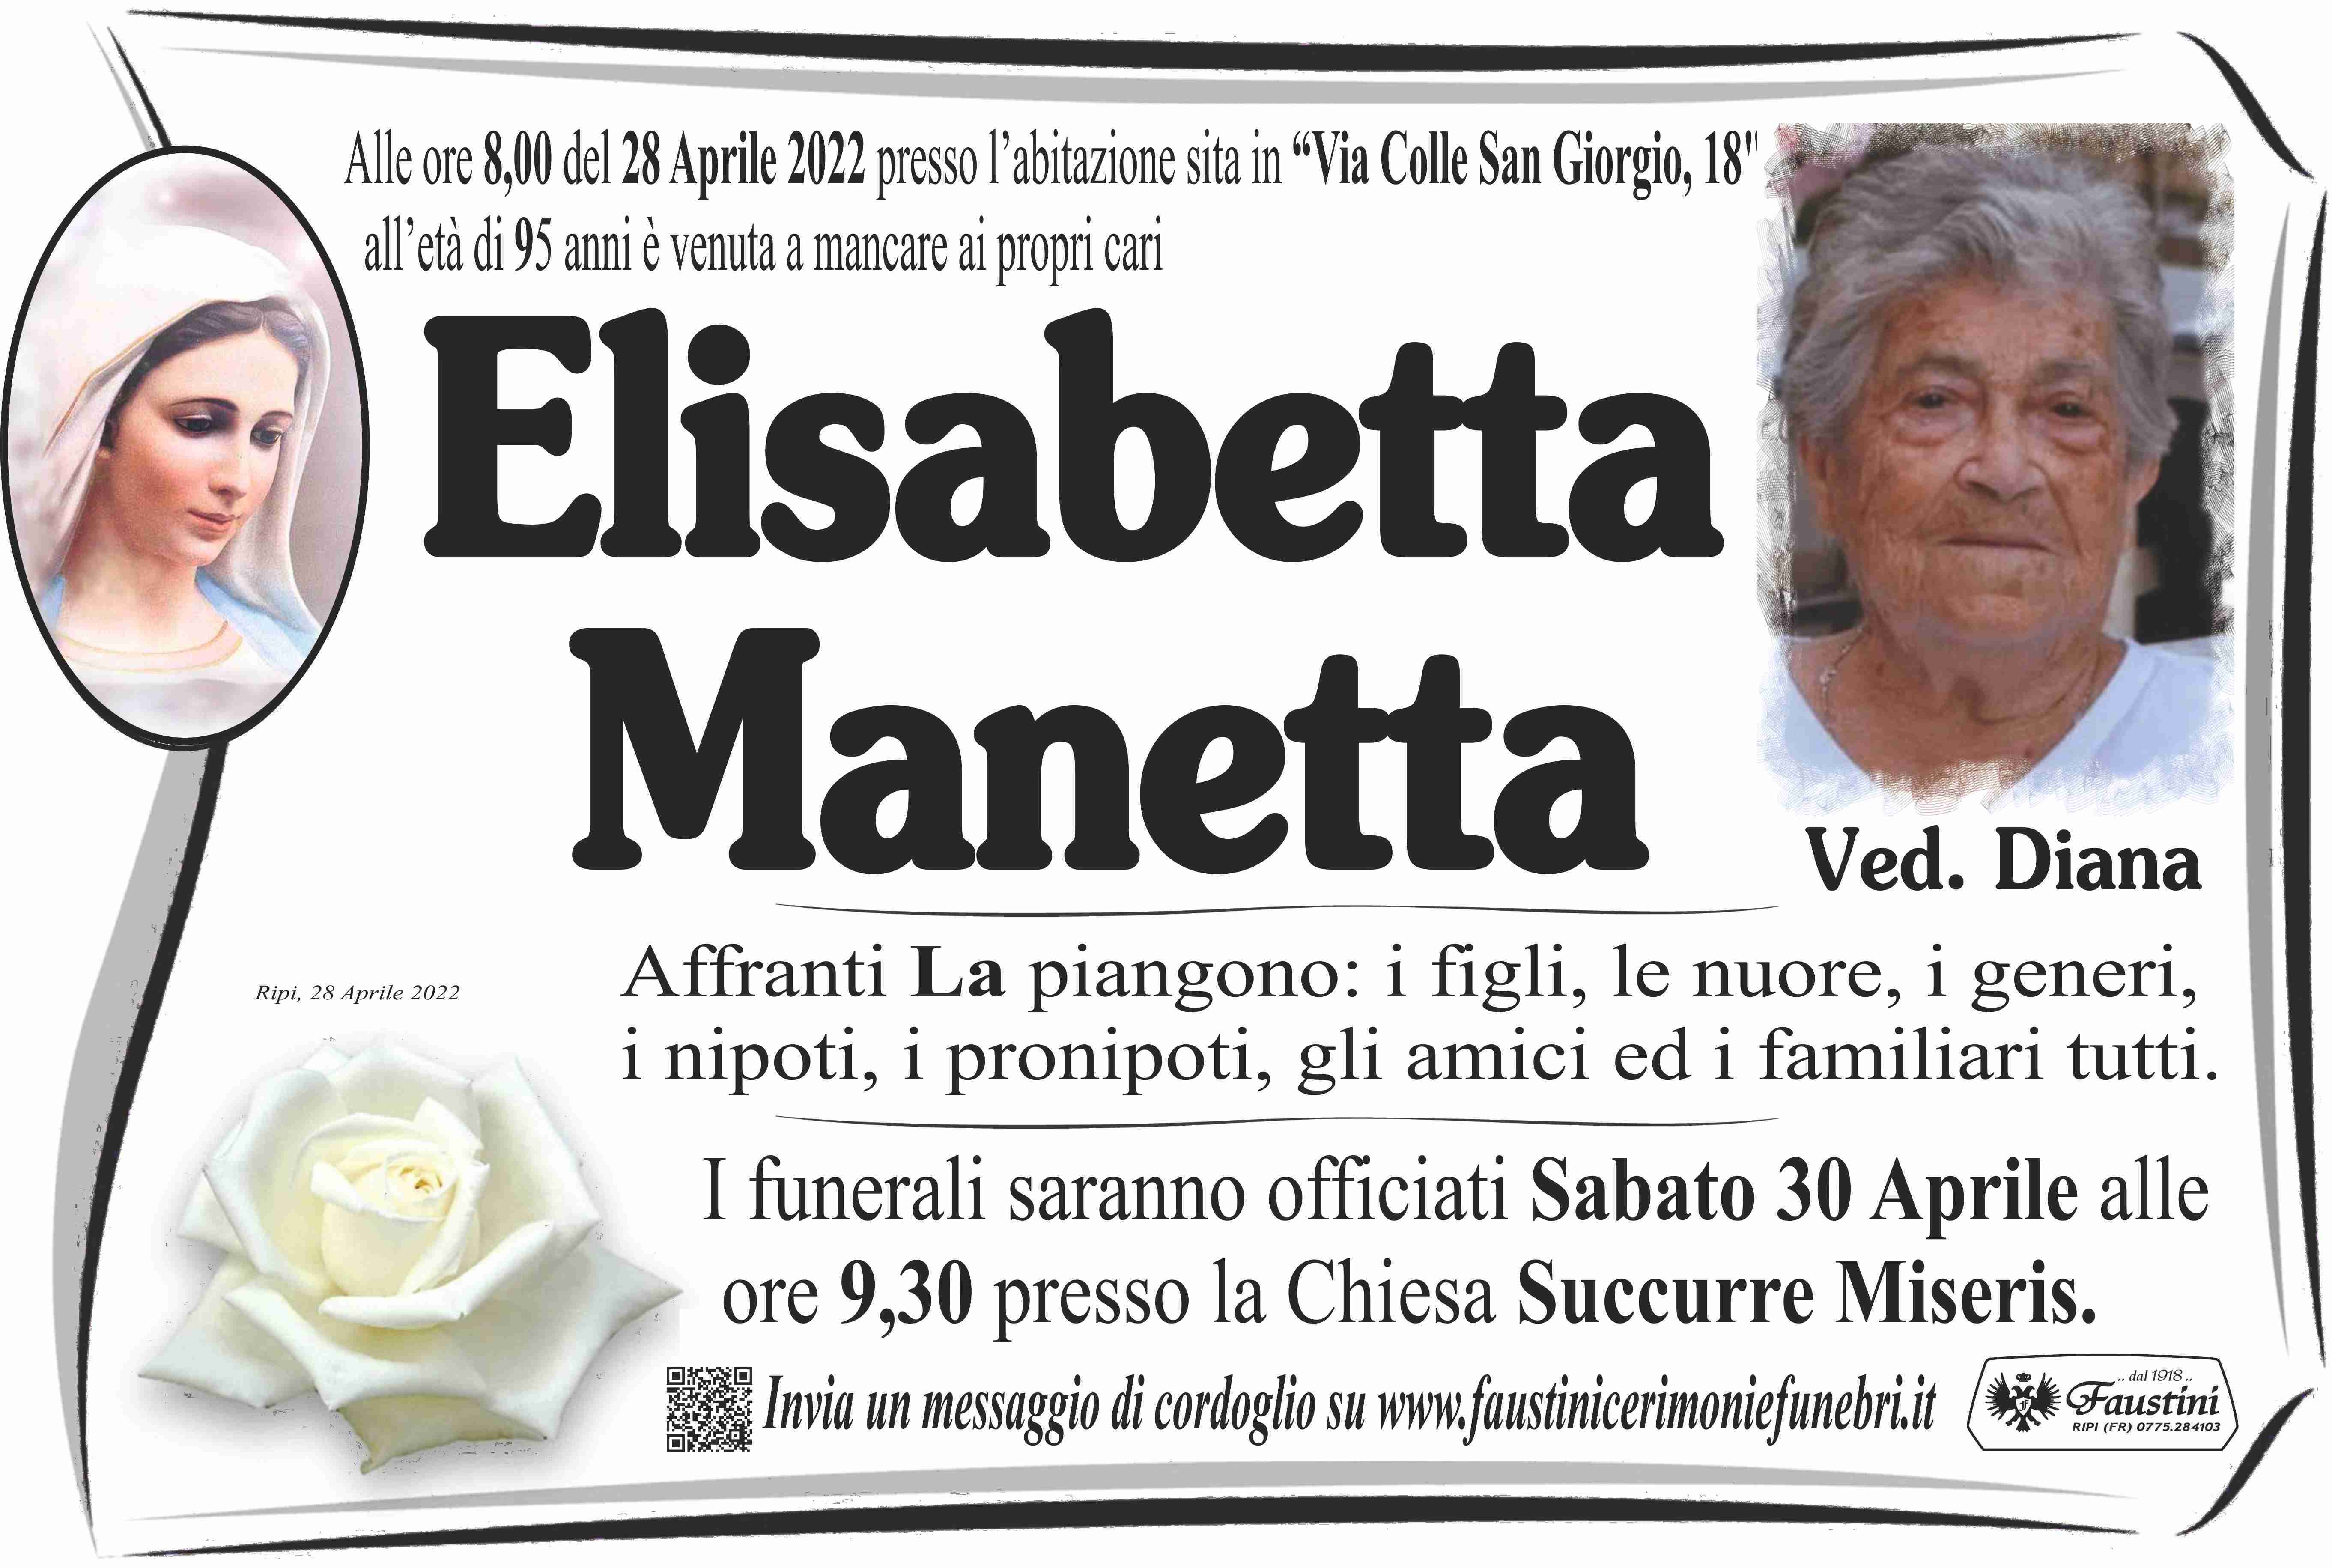 Elisabetta Manetta